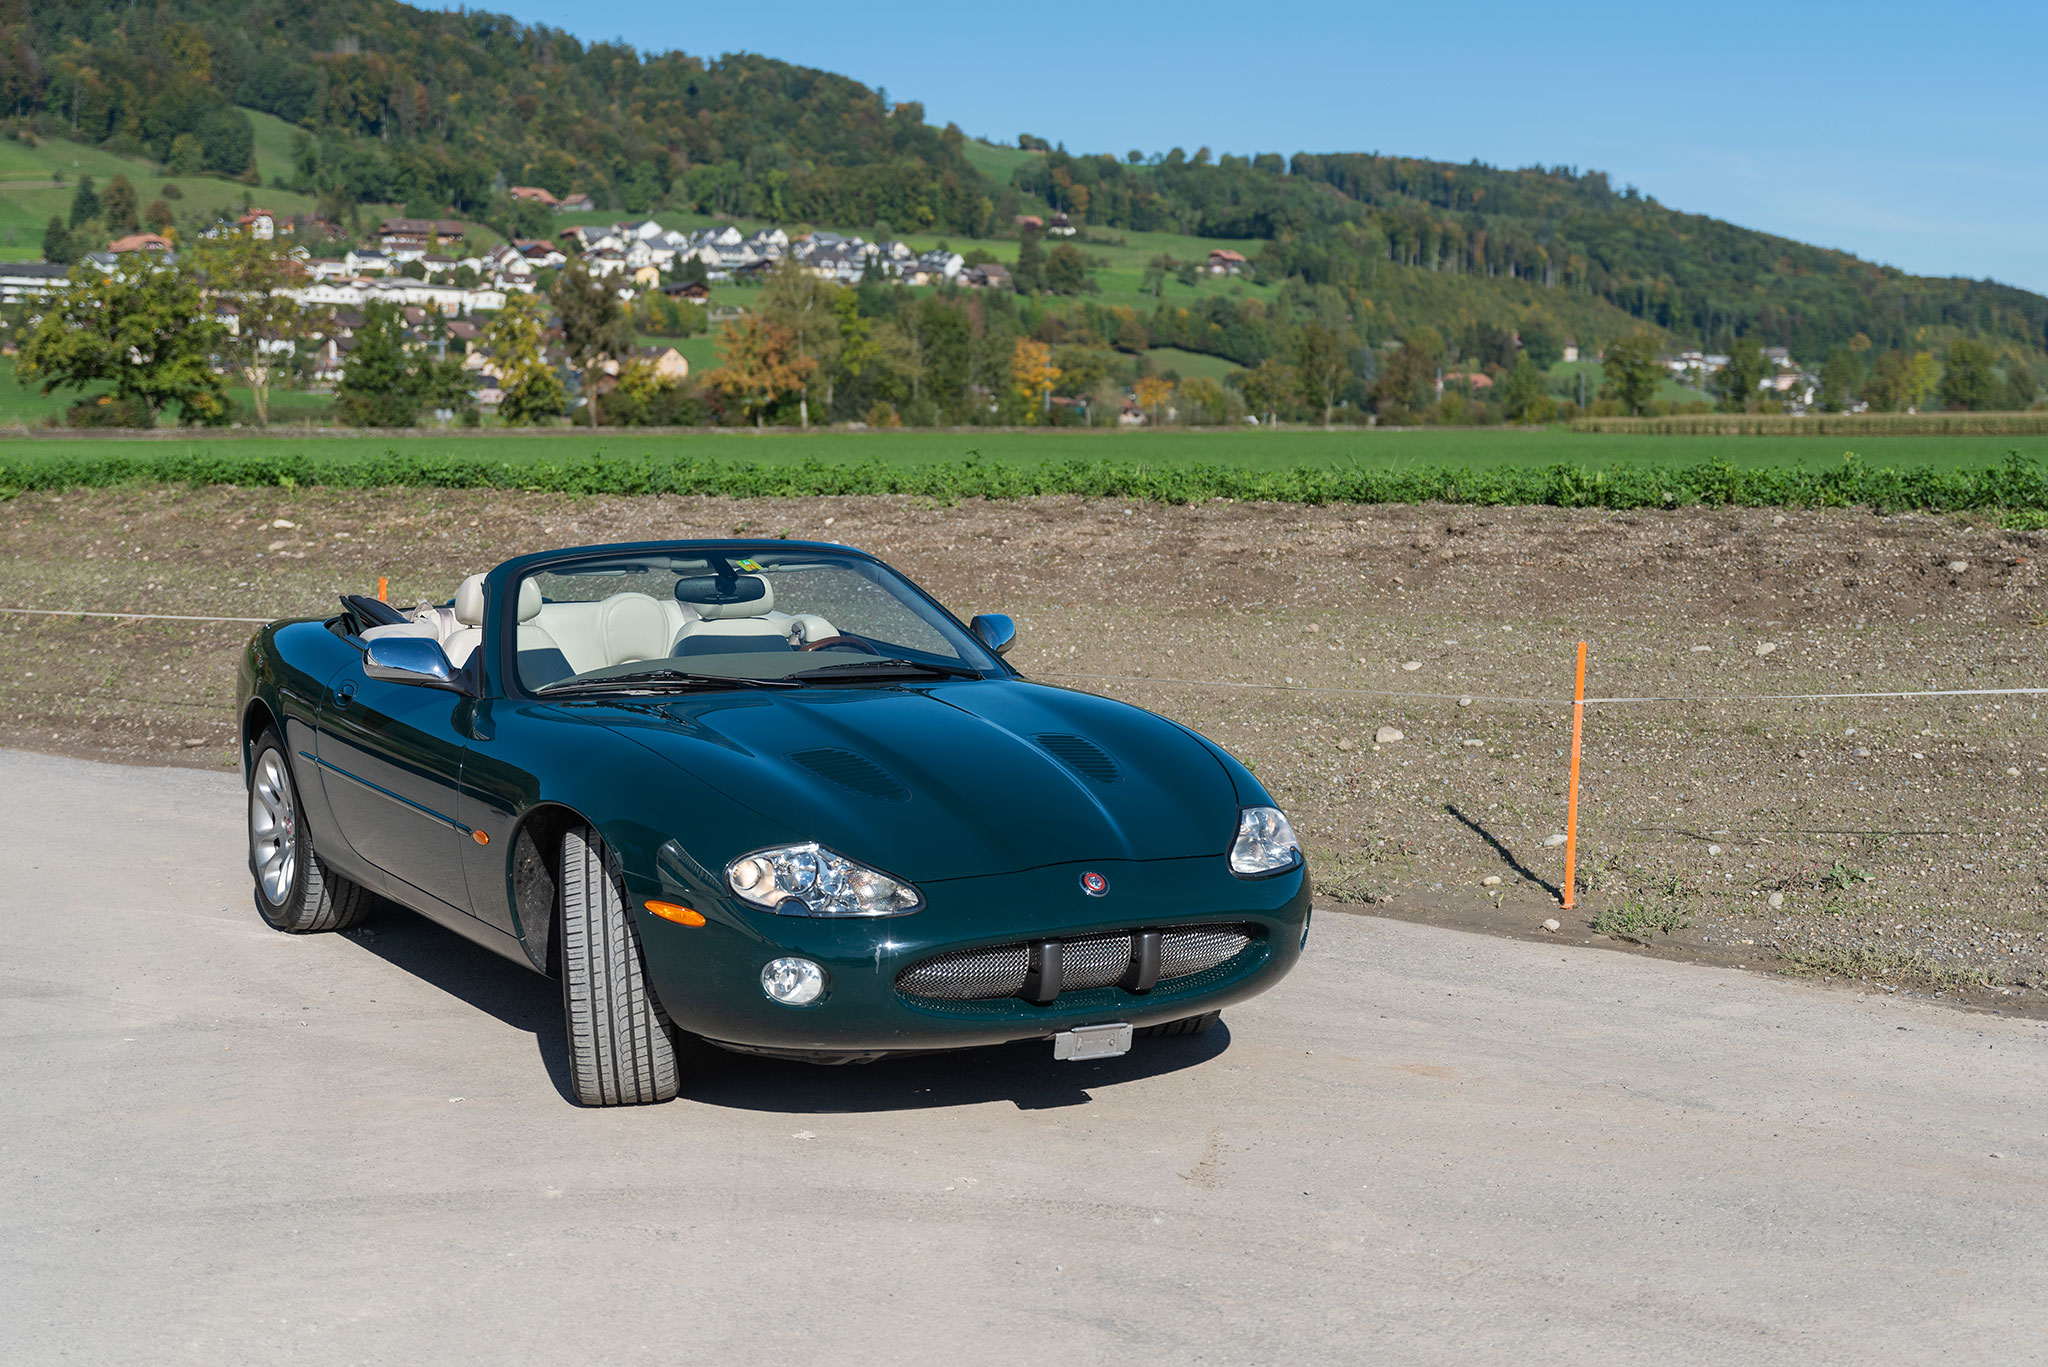 2001 Jaguar XKR 4.0-Litre à compresseur Youngtimer en pleine forme prête à parcourir encore de nombreux kilomètres.